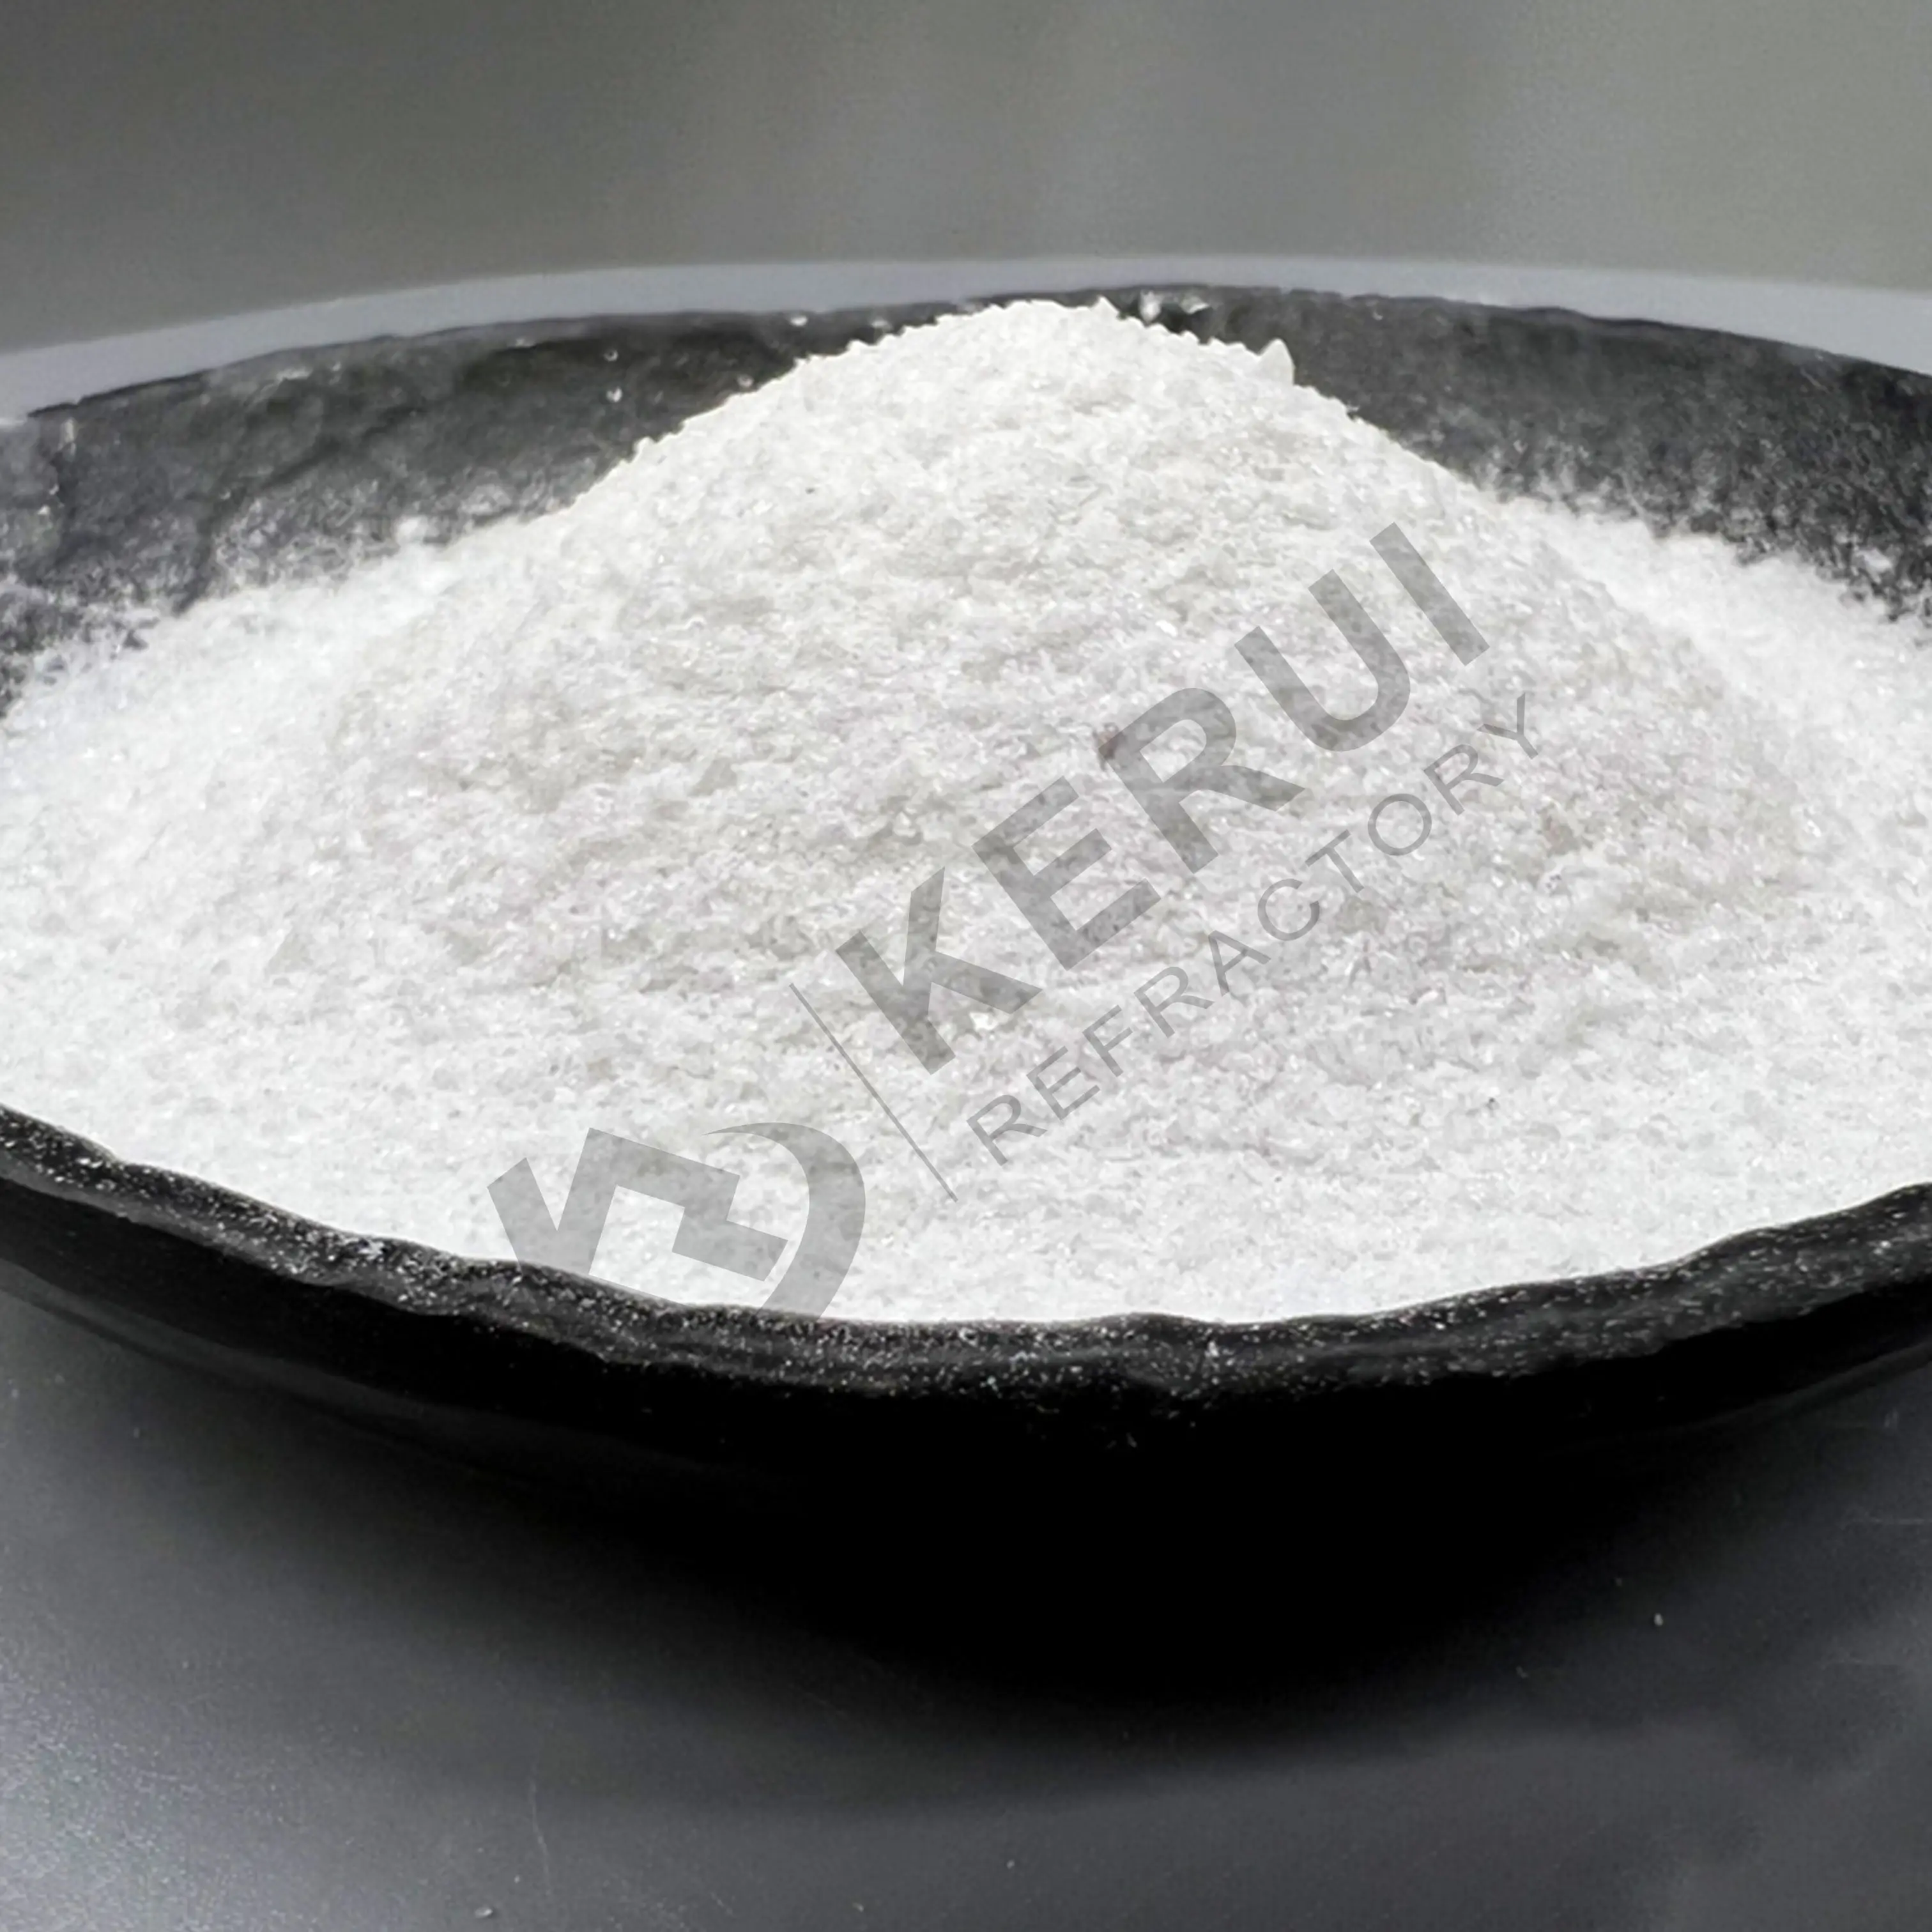 KERUI ทรายคอรันดัมสีขาว กําจัดสนิม การรักษาพื้นผิว ผลิตภัณฑ์เซรามิก โลหะมีค่า แก้วคริสตัล คอรันดัมสีขาว